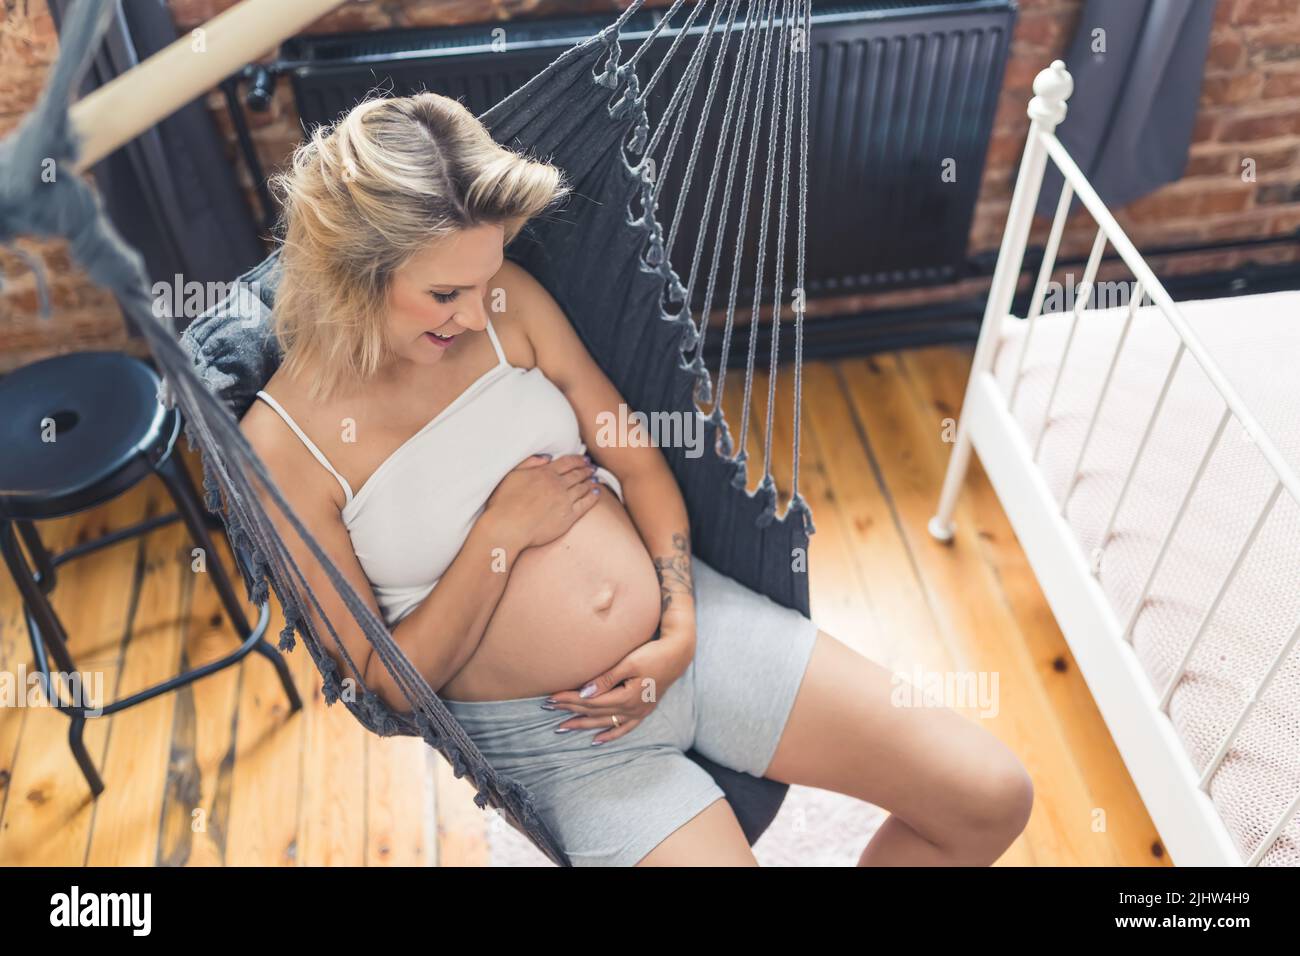 Girato dalla parte superiore di una giovane donna caucasica bionda con il ventre incinta che guarda il suo corpo, abbracciando il ventre, e sorridendo mentre si siede su un'amaca nera interna. Foto di alta qualità Foto Stock